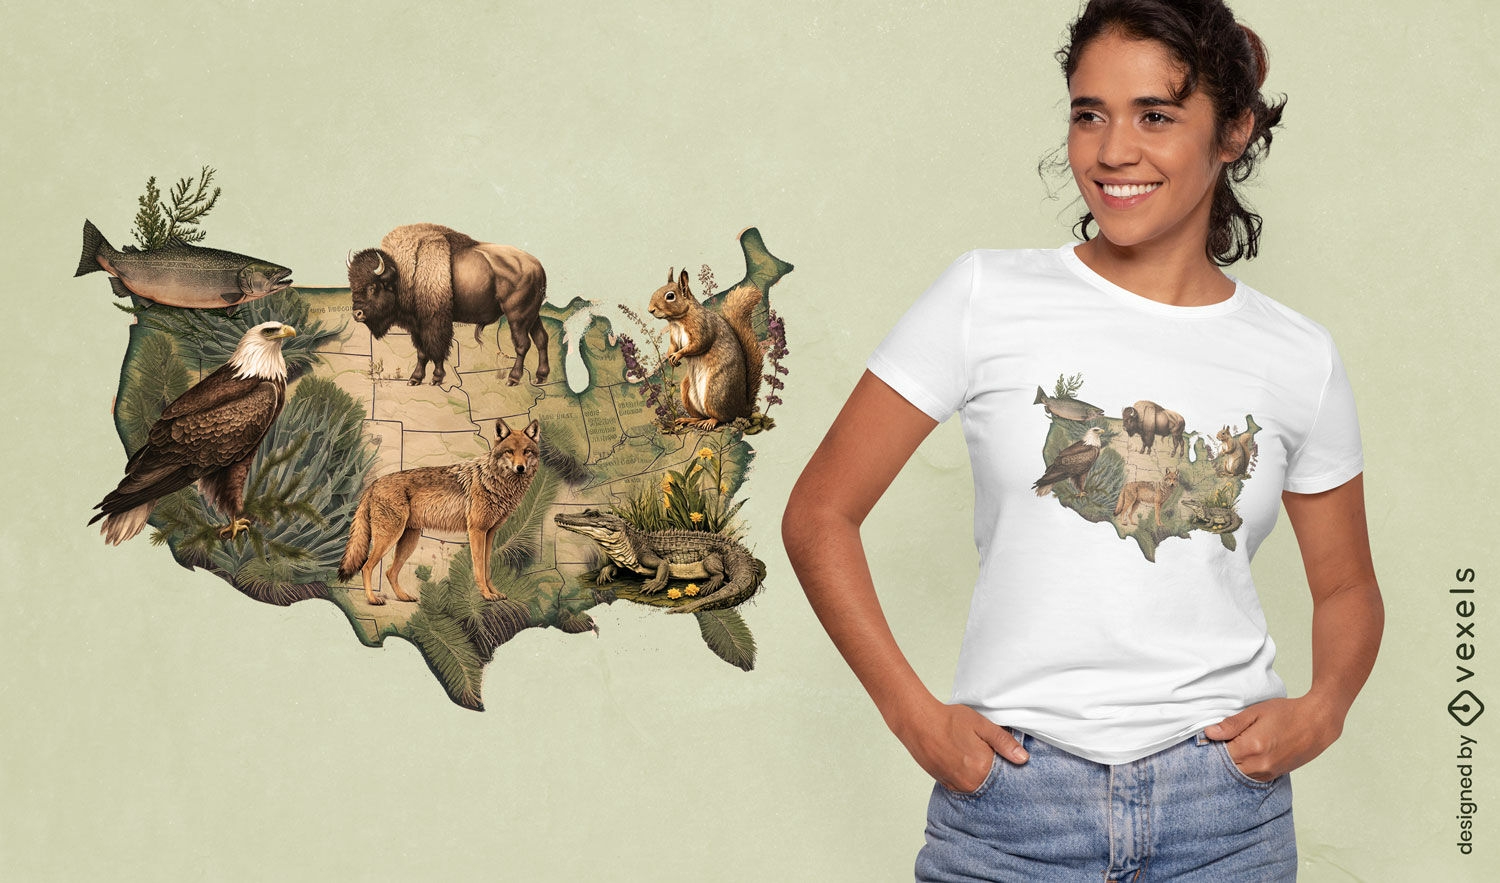 Dise?o de camiseta de mapa de vida silvestre estadounidense.